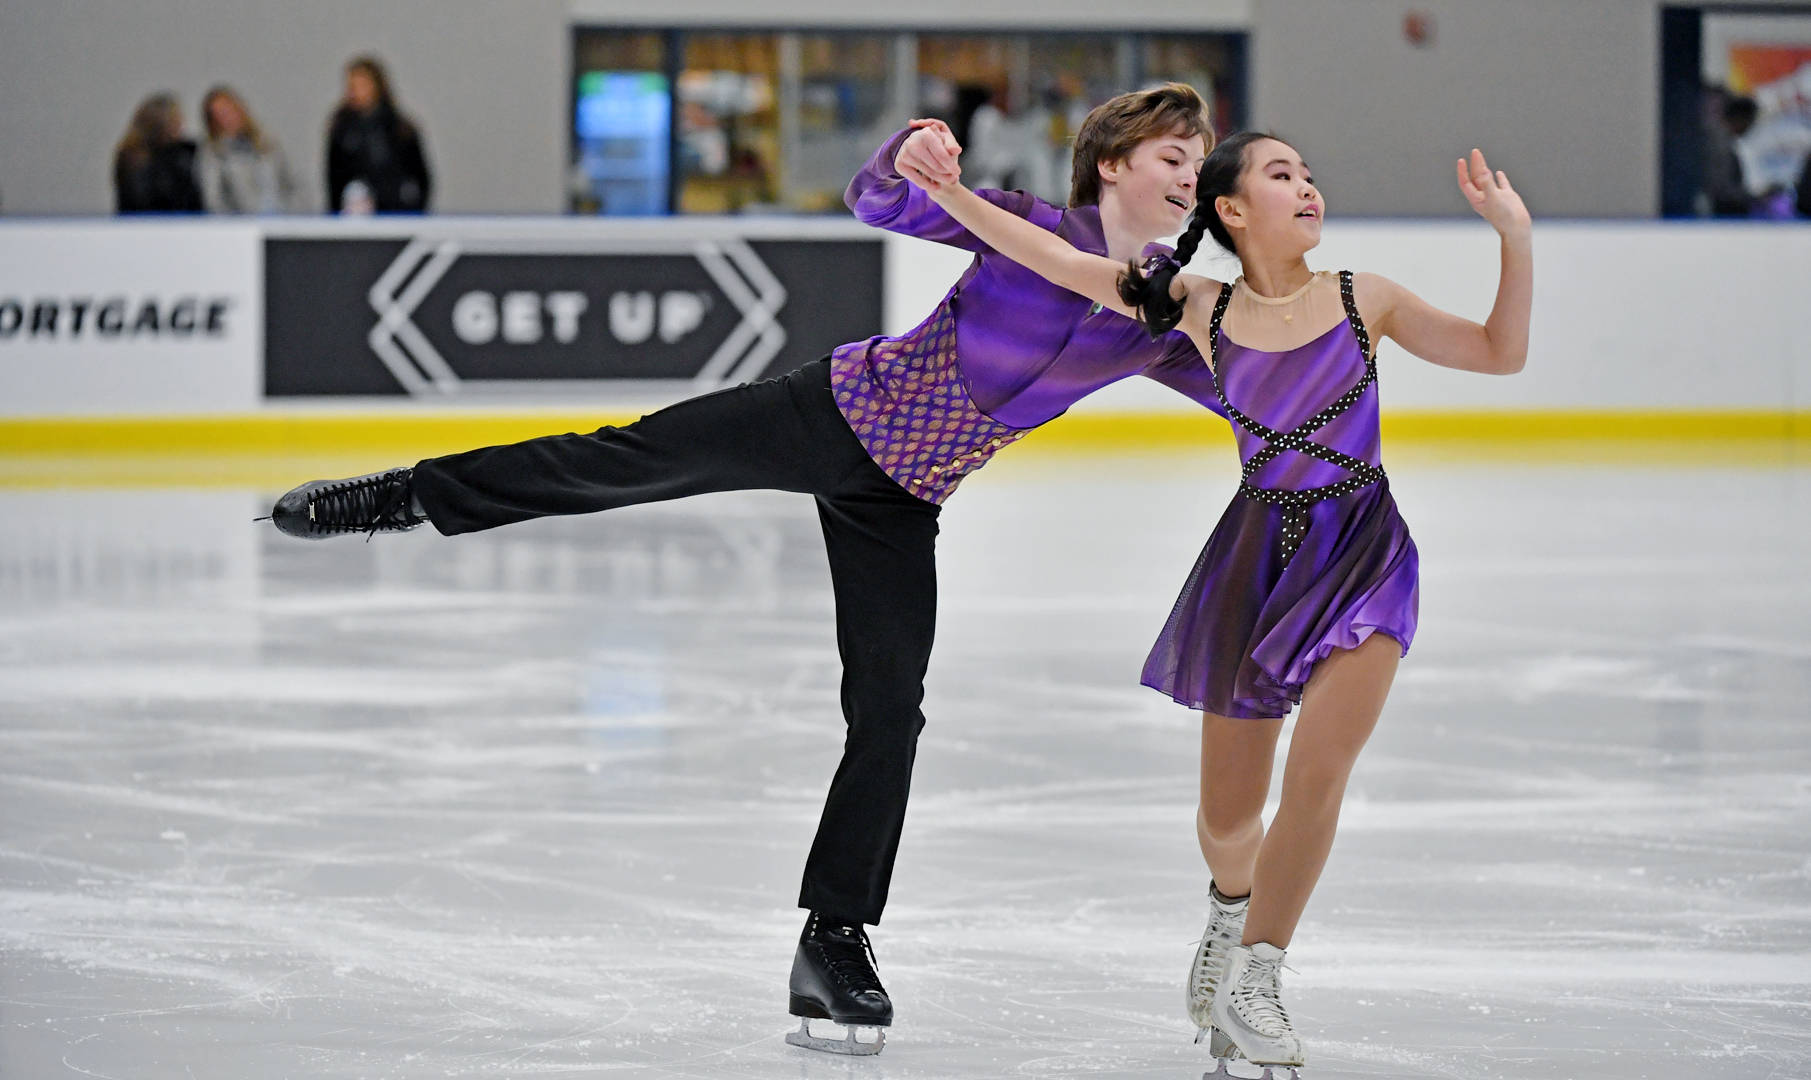 Kiana Pan and llya Mondrowski in mid-performance at juvenile figure skating Wallpaper